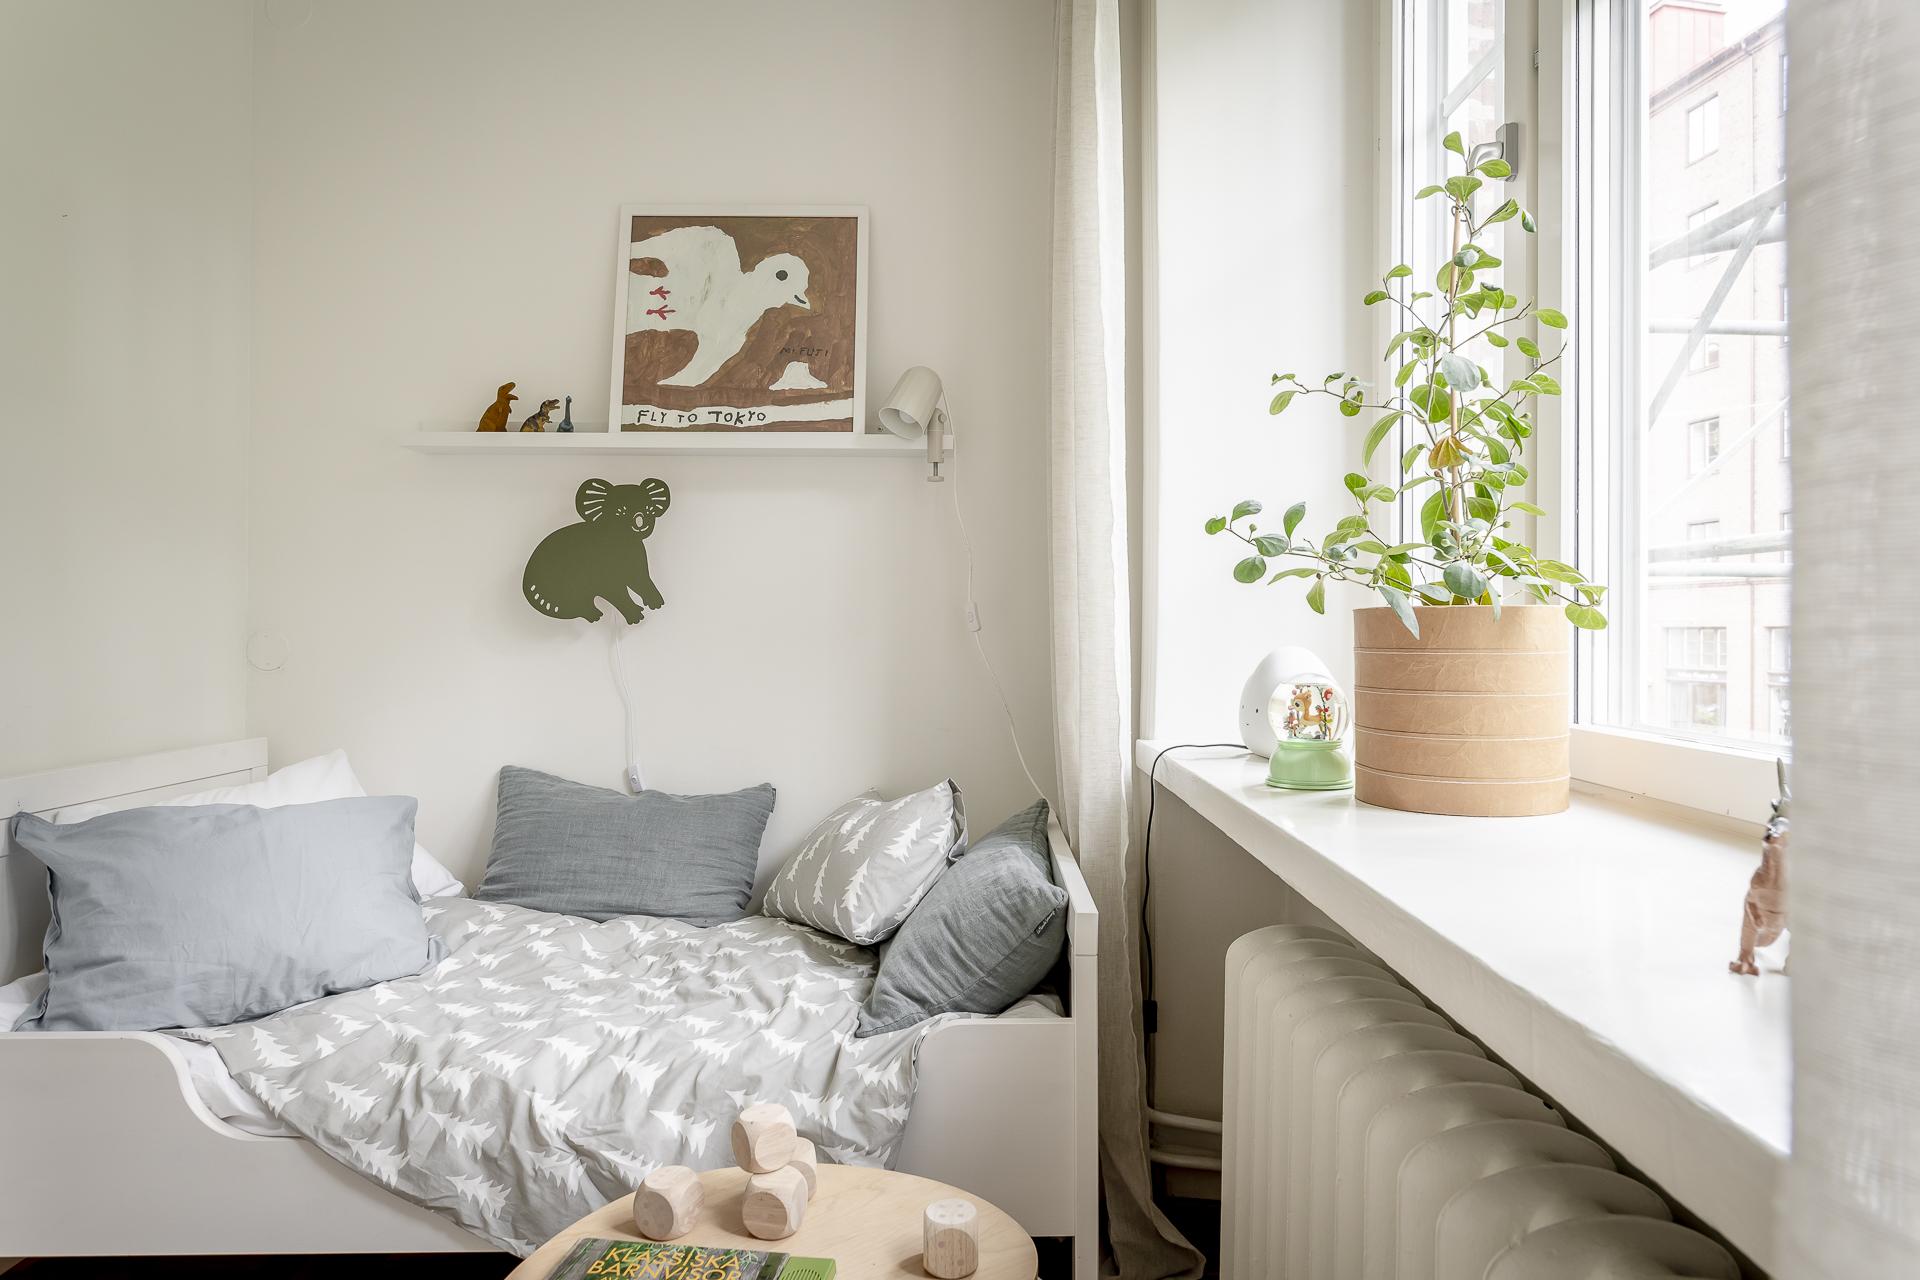 公寓設計,公寓設計案例,瑞典,60㎡,Alvhem,小公寓設計案例,公寓裝修,北歐風格,最小宅,白色+米色